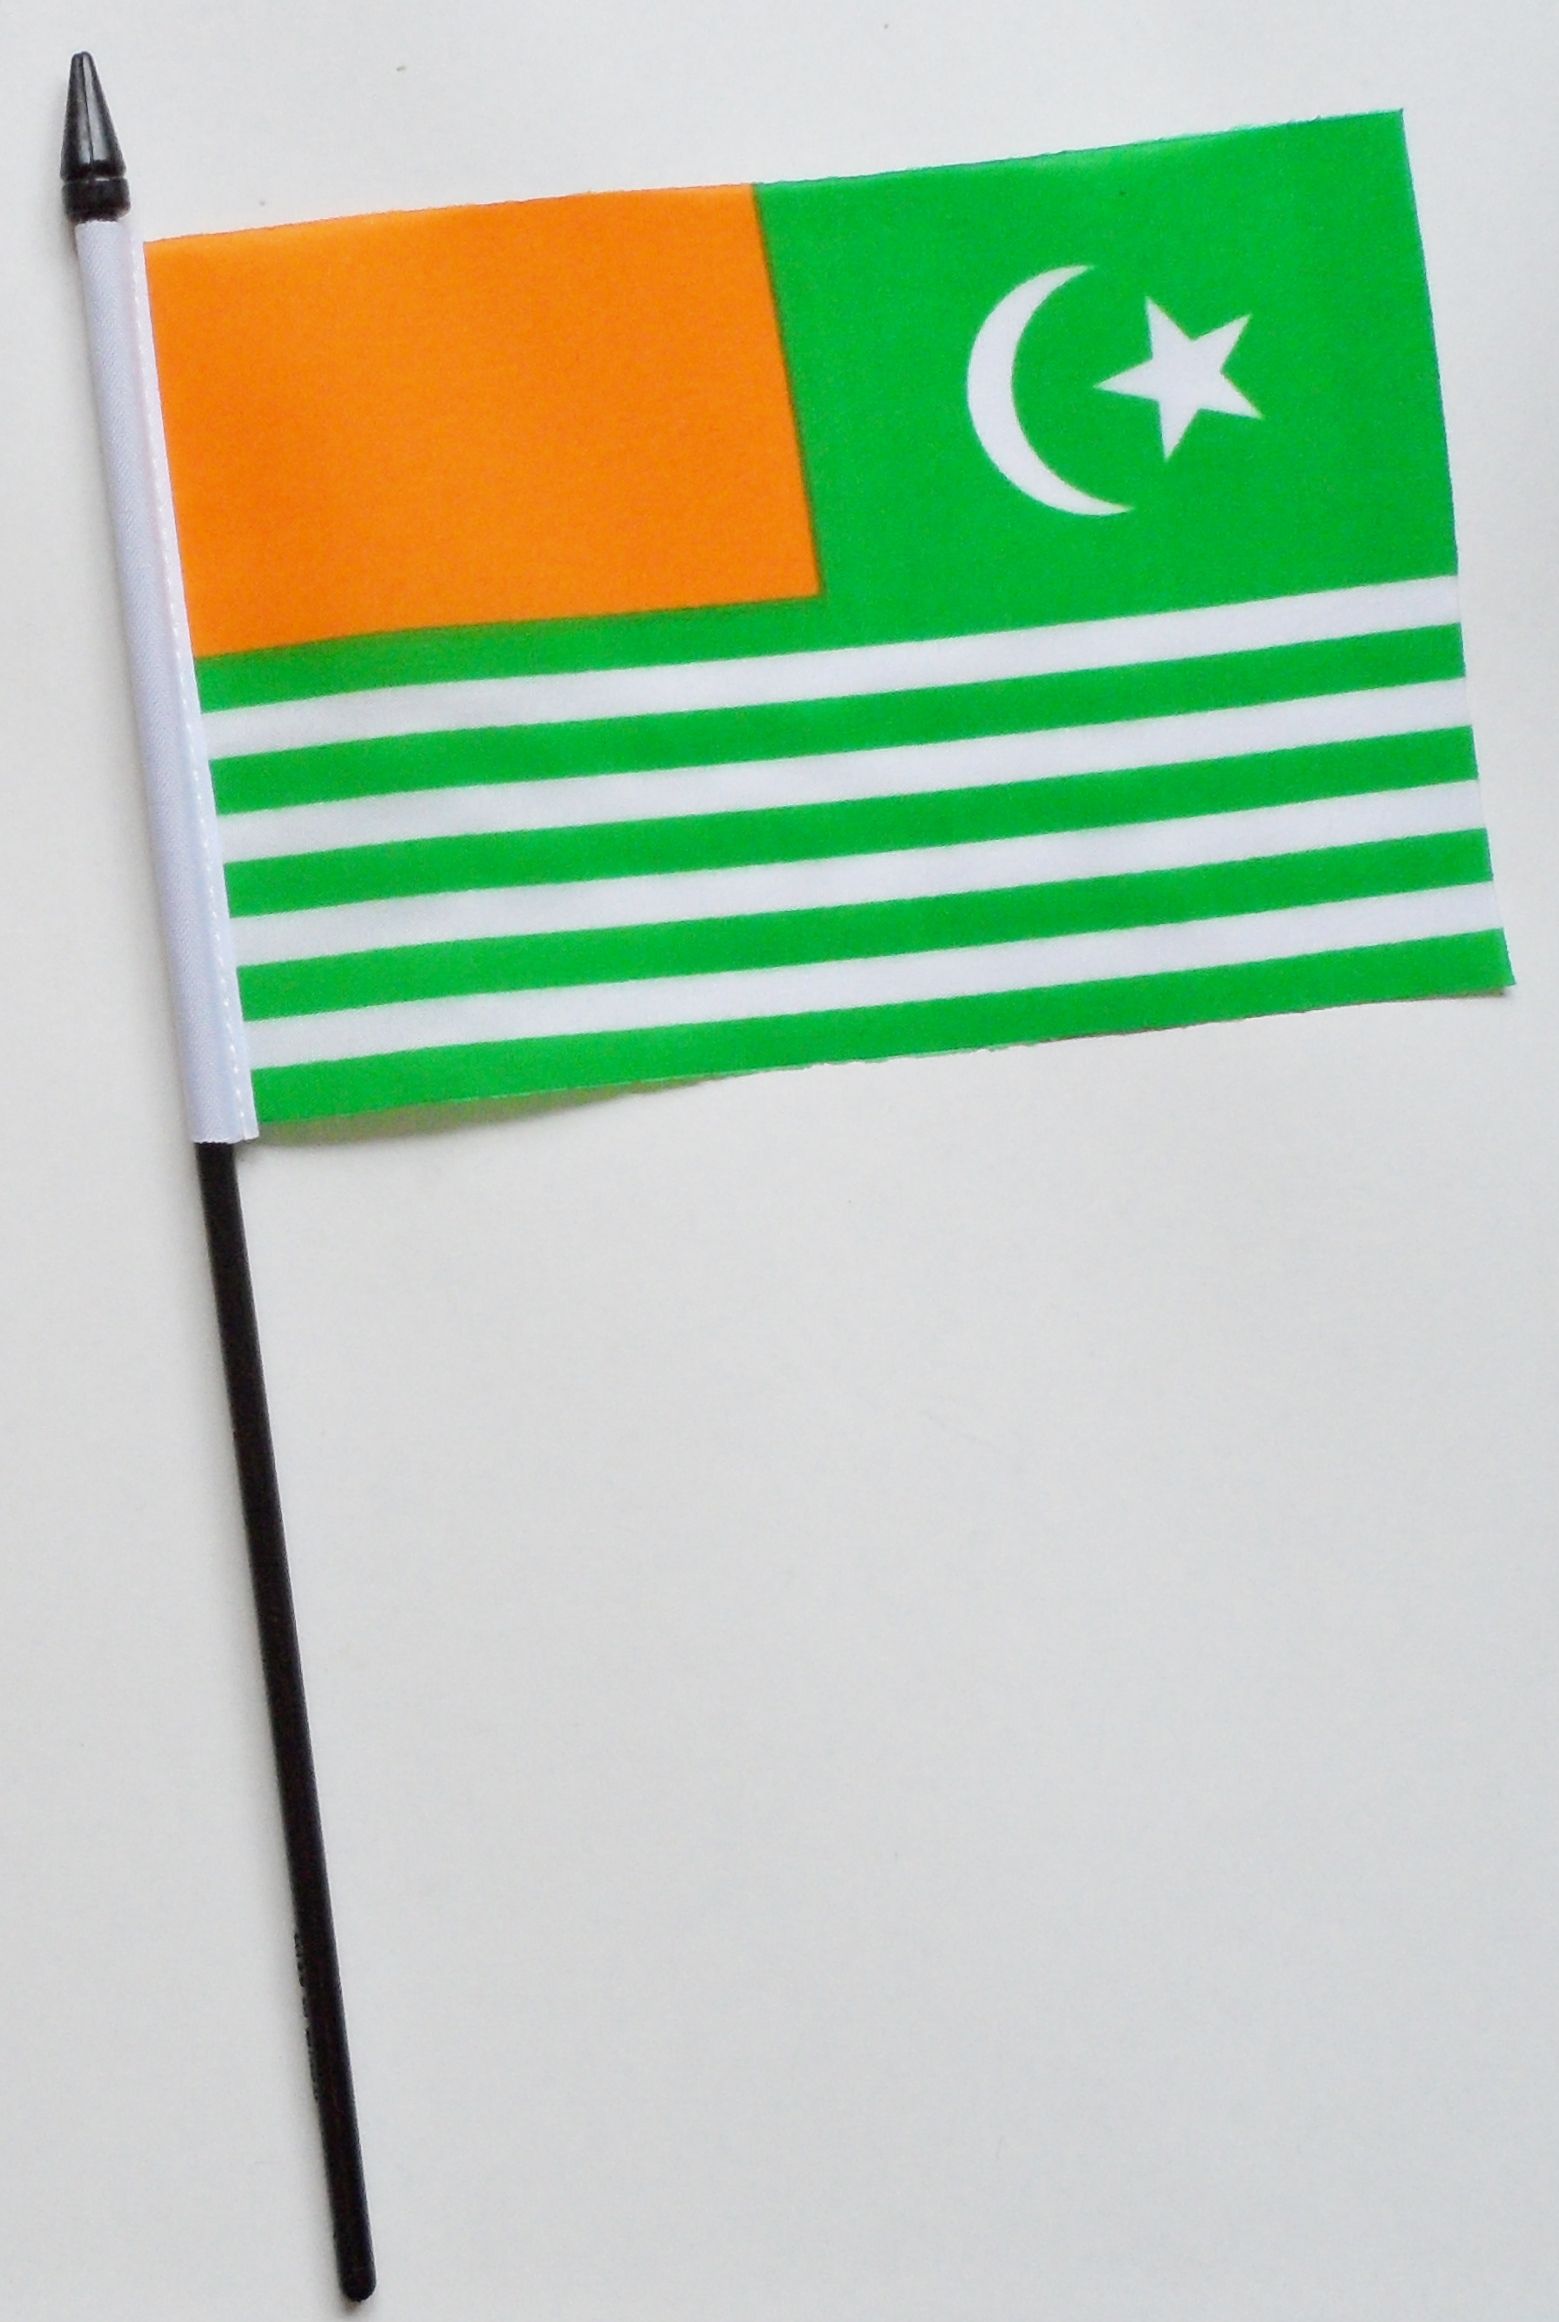 Pakistan Azad Jammu and Kashmir Small Hand Waving Flag